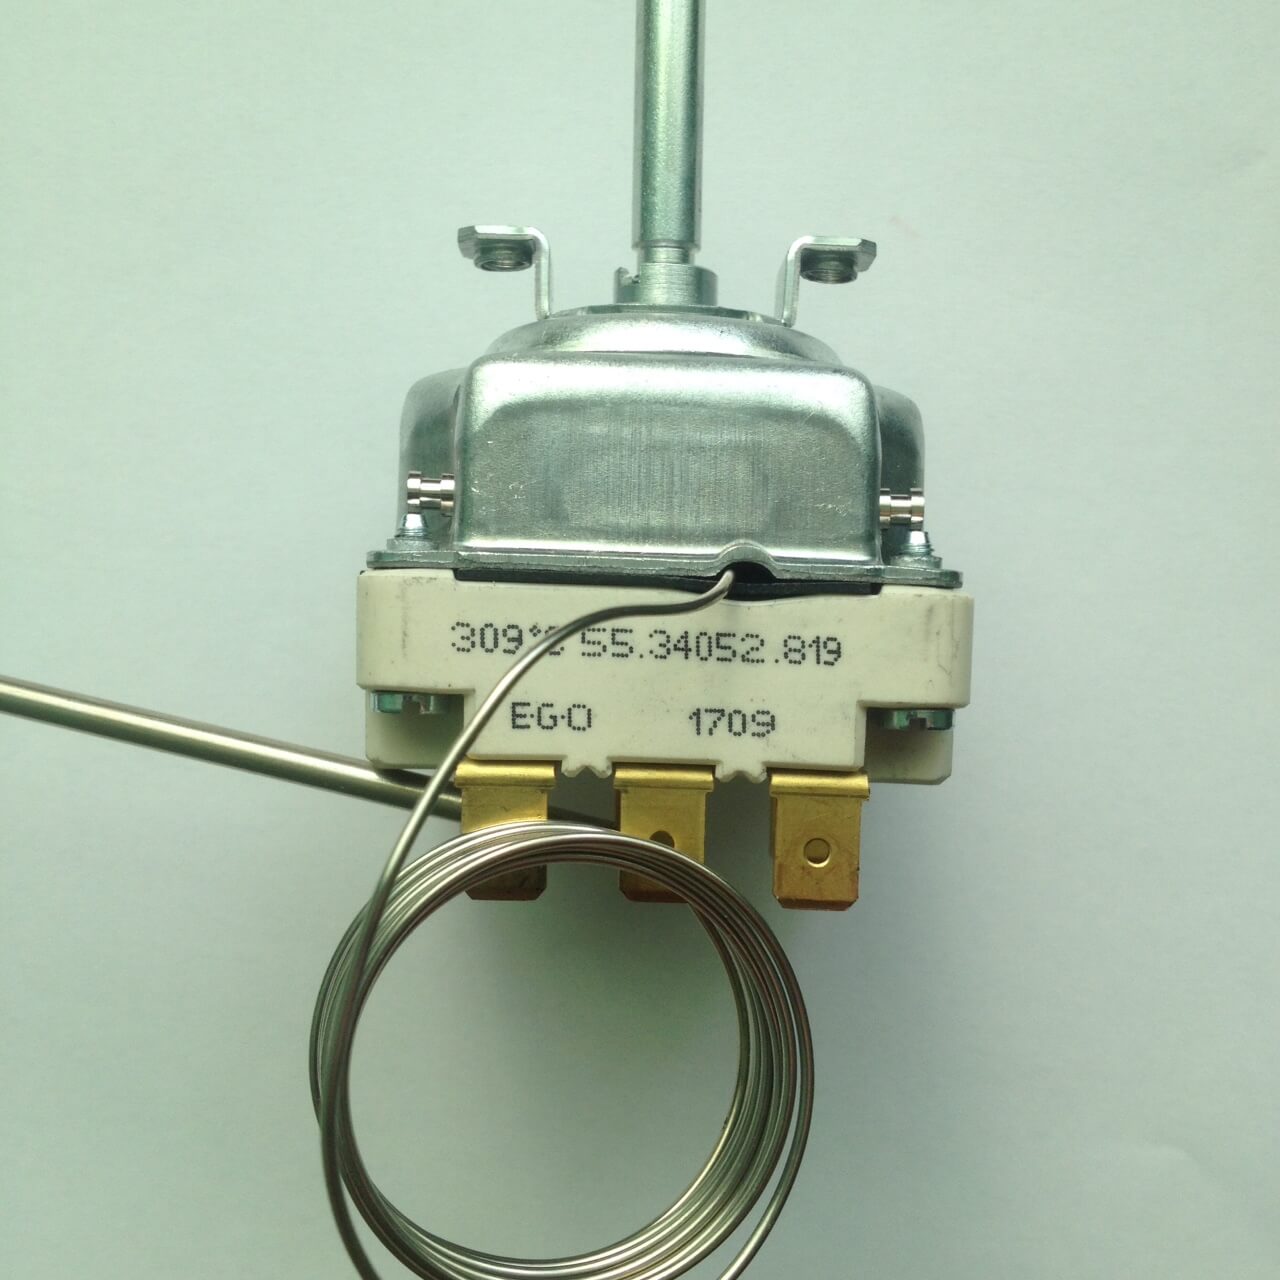 Терморегулятор капиллярный для духовки 309С, 3Р 55.34052.819